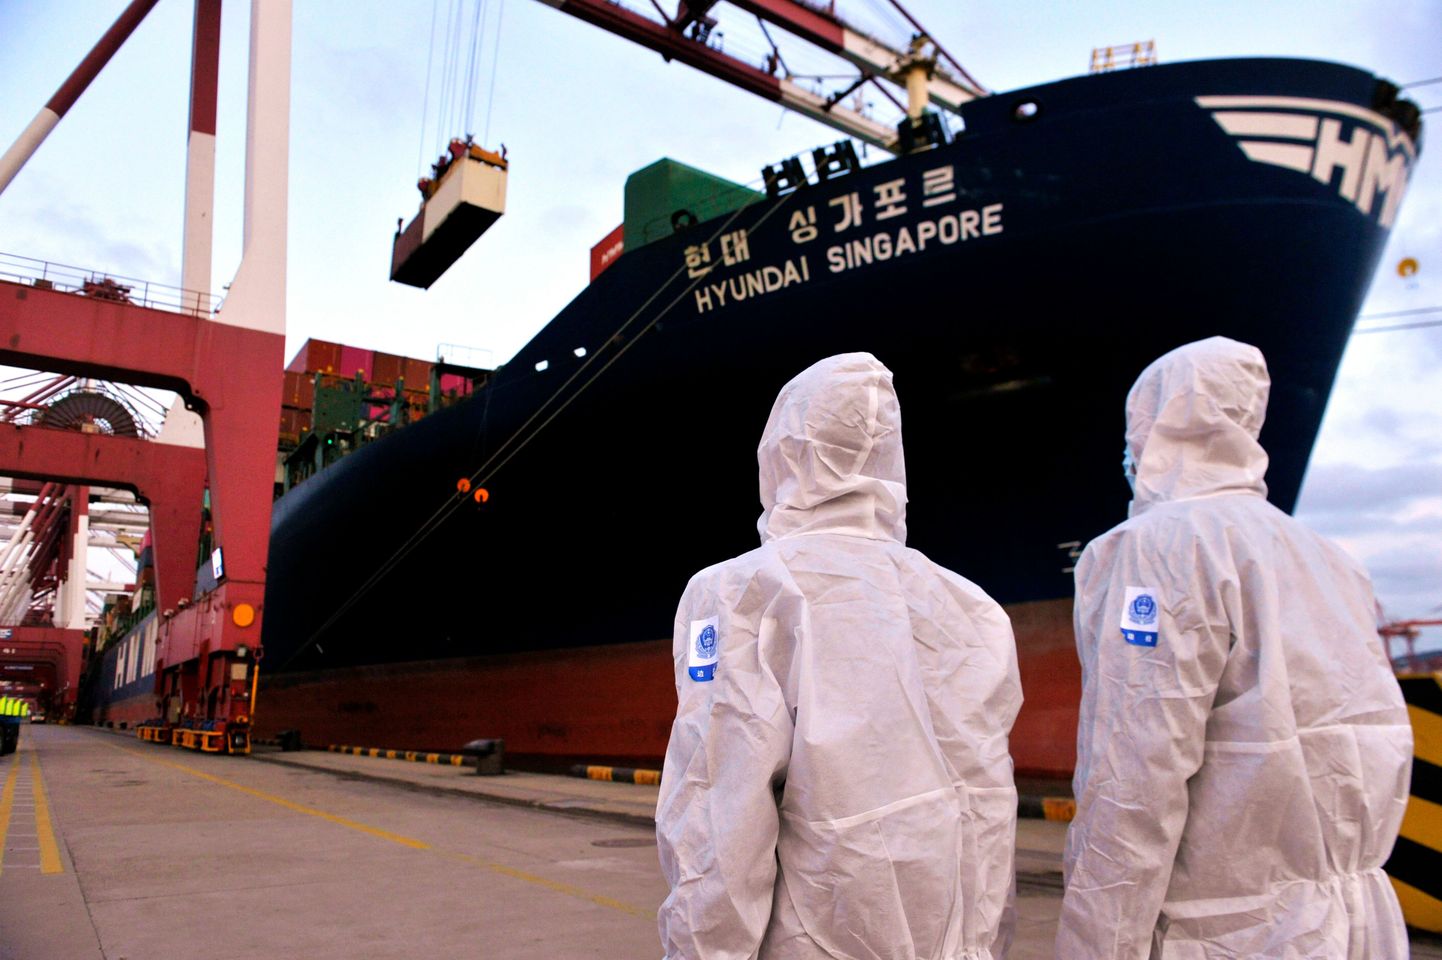 Hiina ametnikud kaubalaevale suundumas.